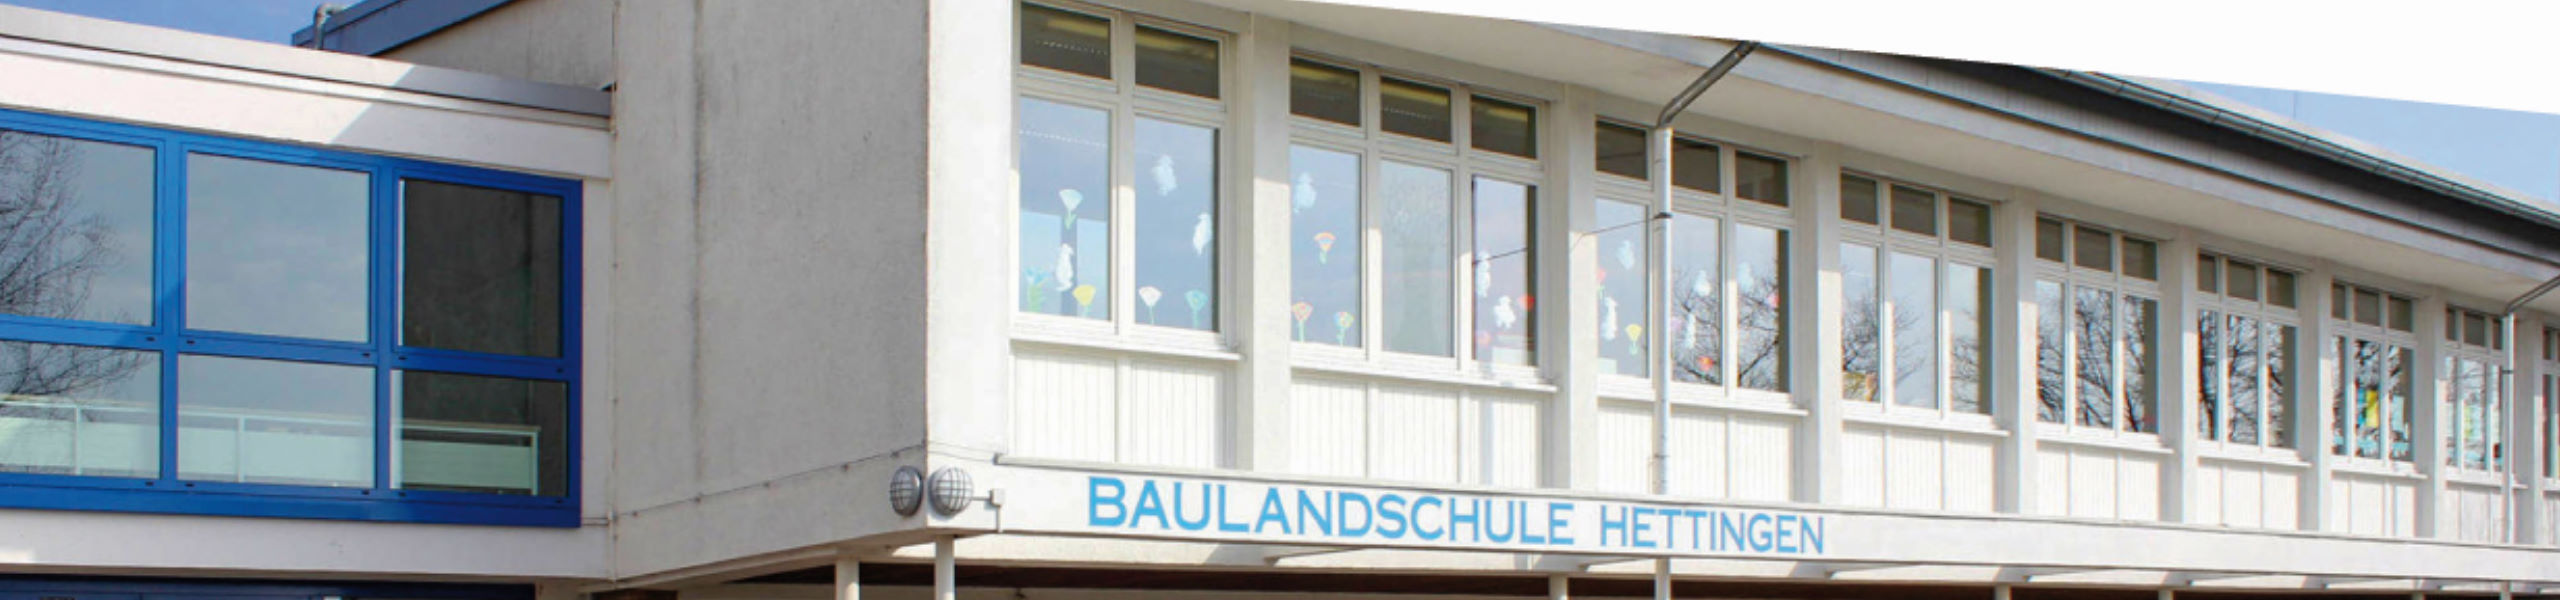 Baulandschule Hettingen - Kooperation KiGa